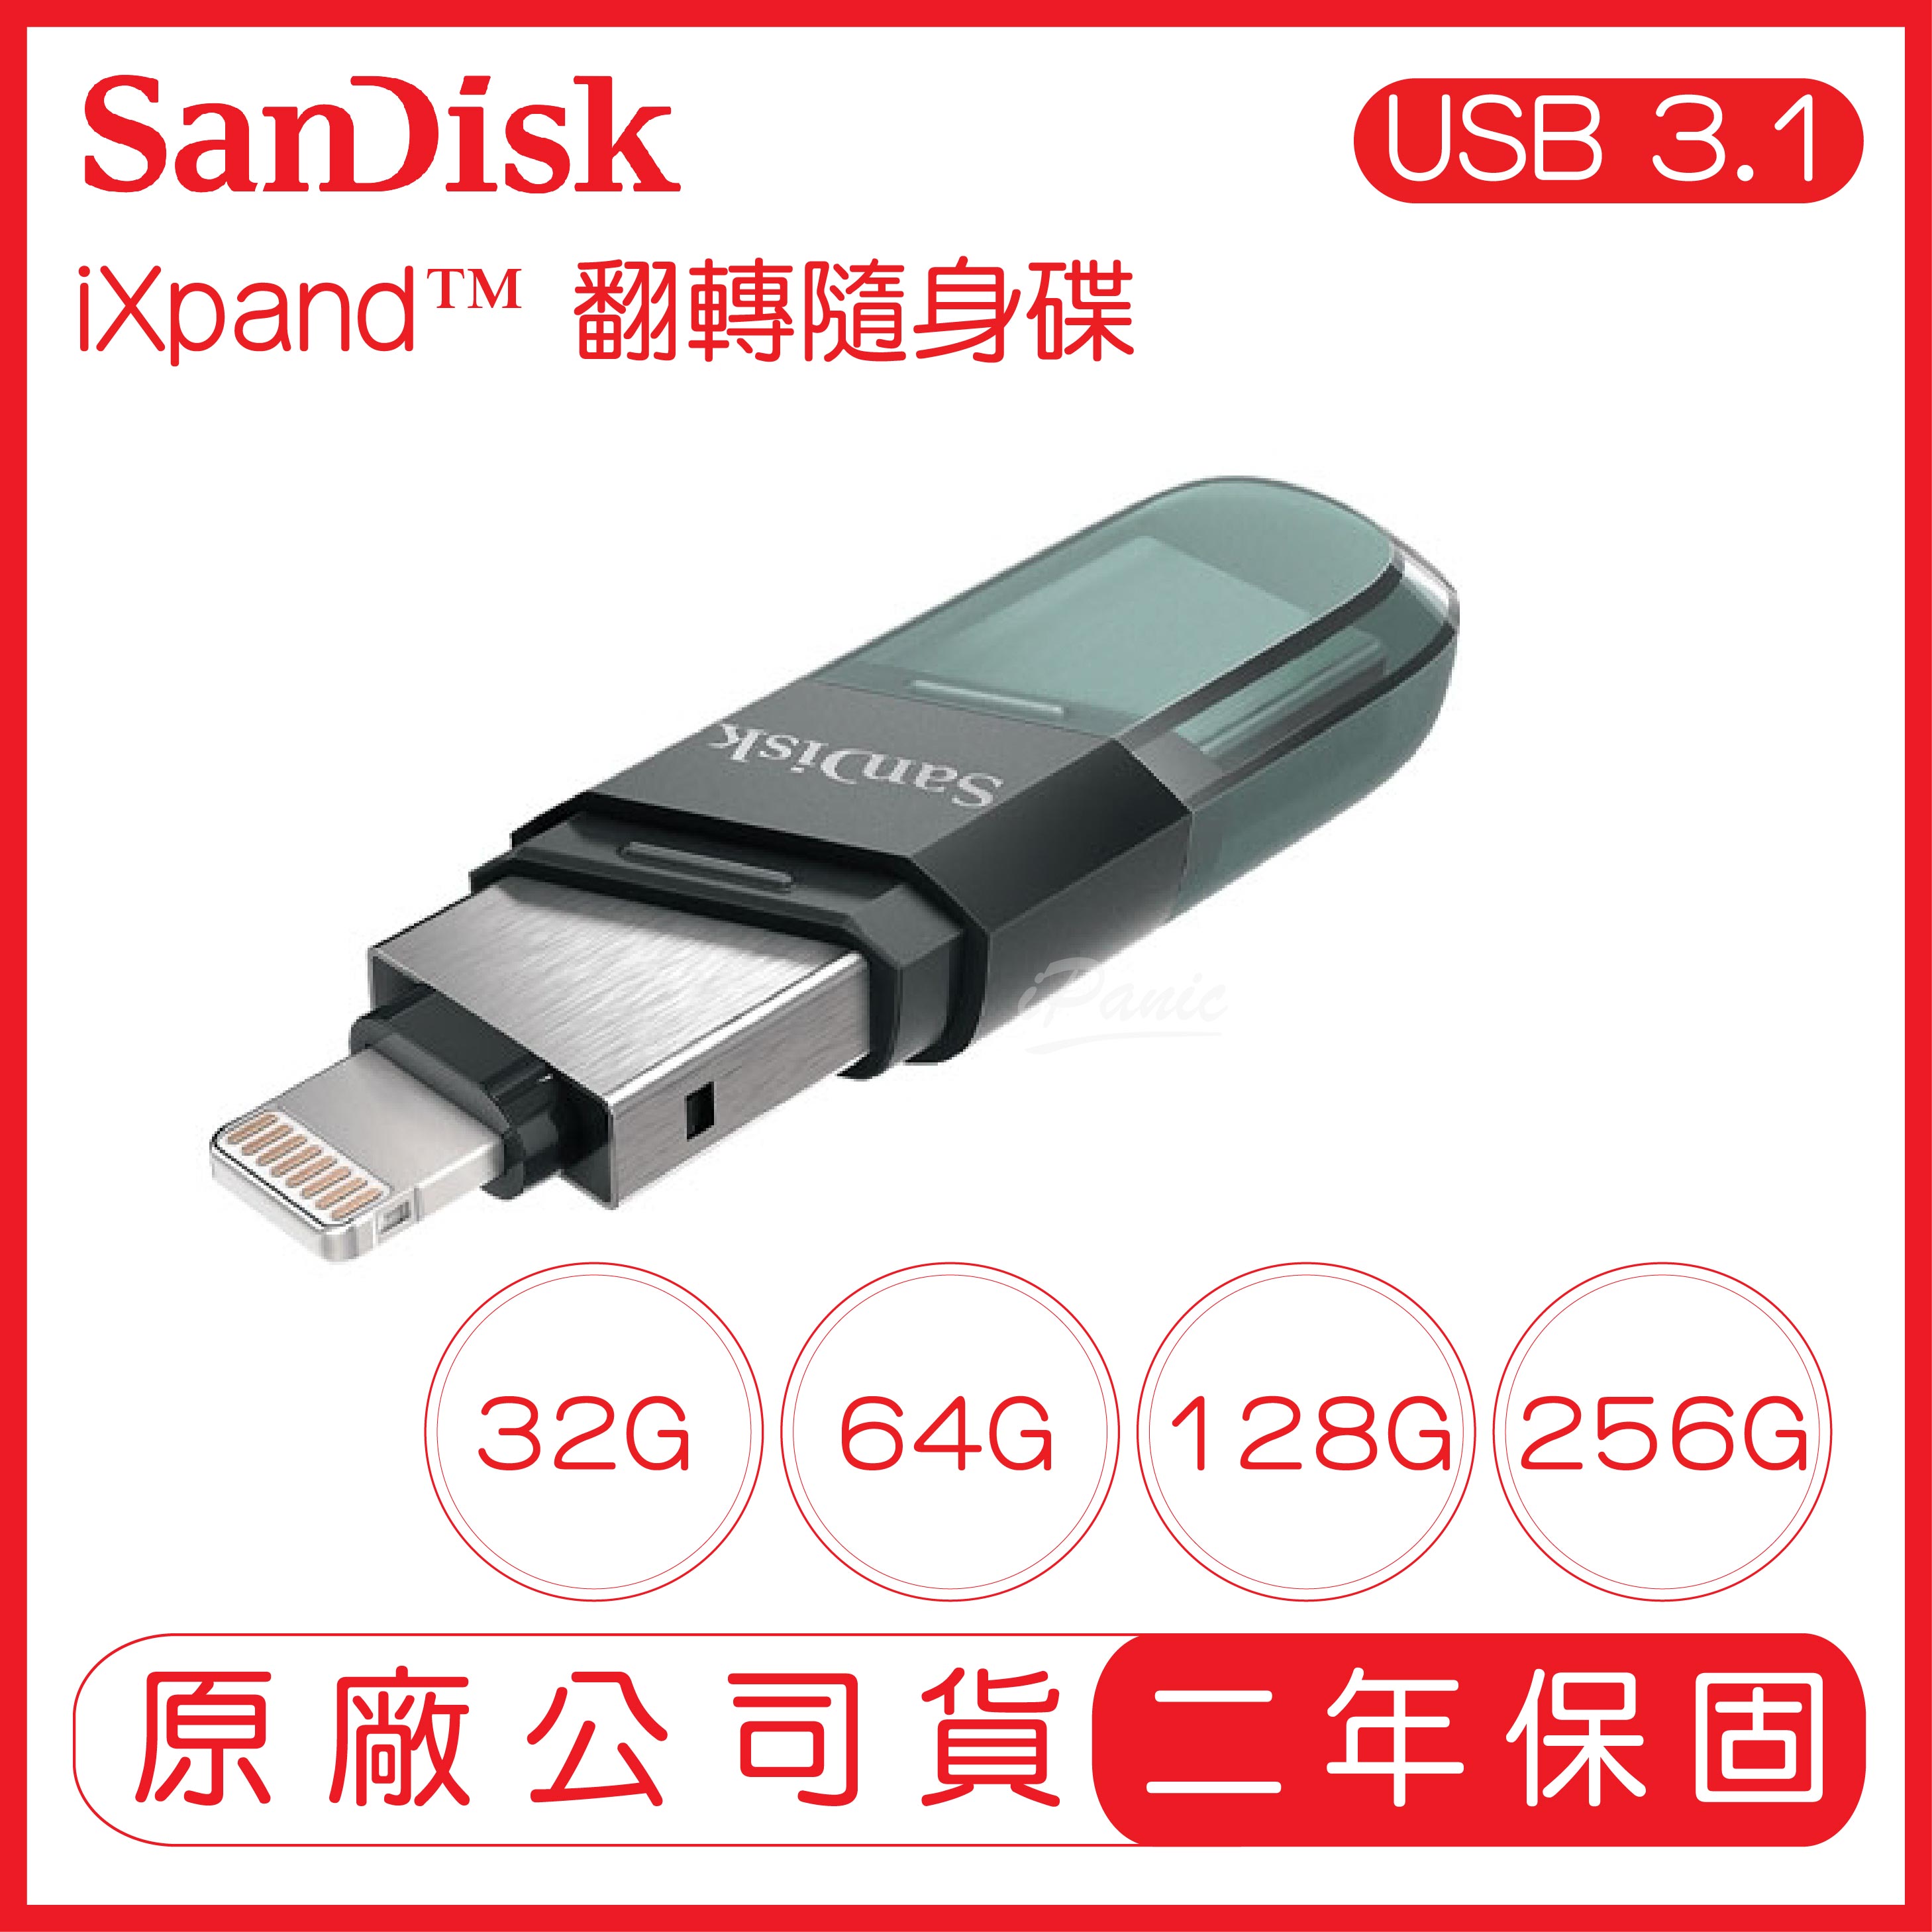 【最高22%點數】SANDISK iXpand Flash Drive Flip 翻轉隨身碟 256G 128G 64G 手機隨身碟 蘋果【限定樂天APP下單】